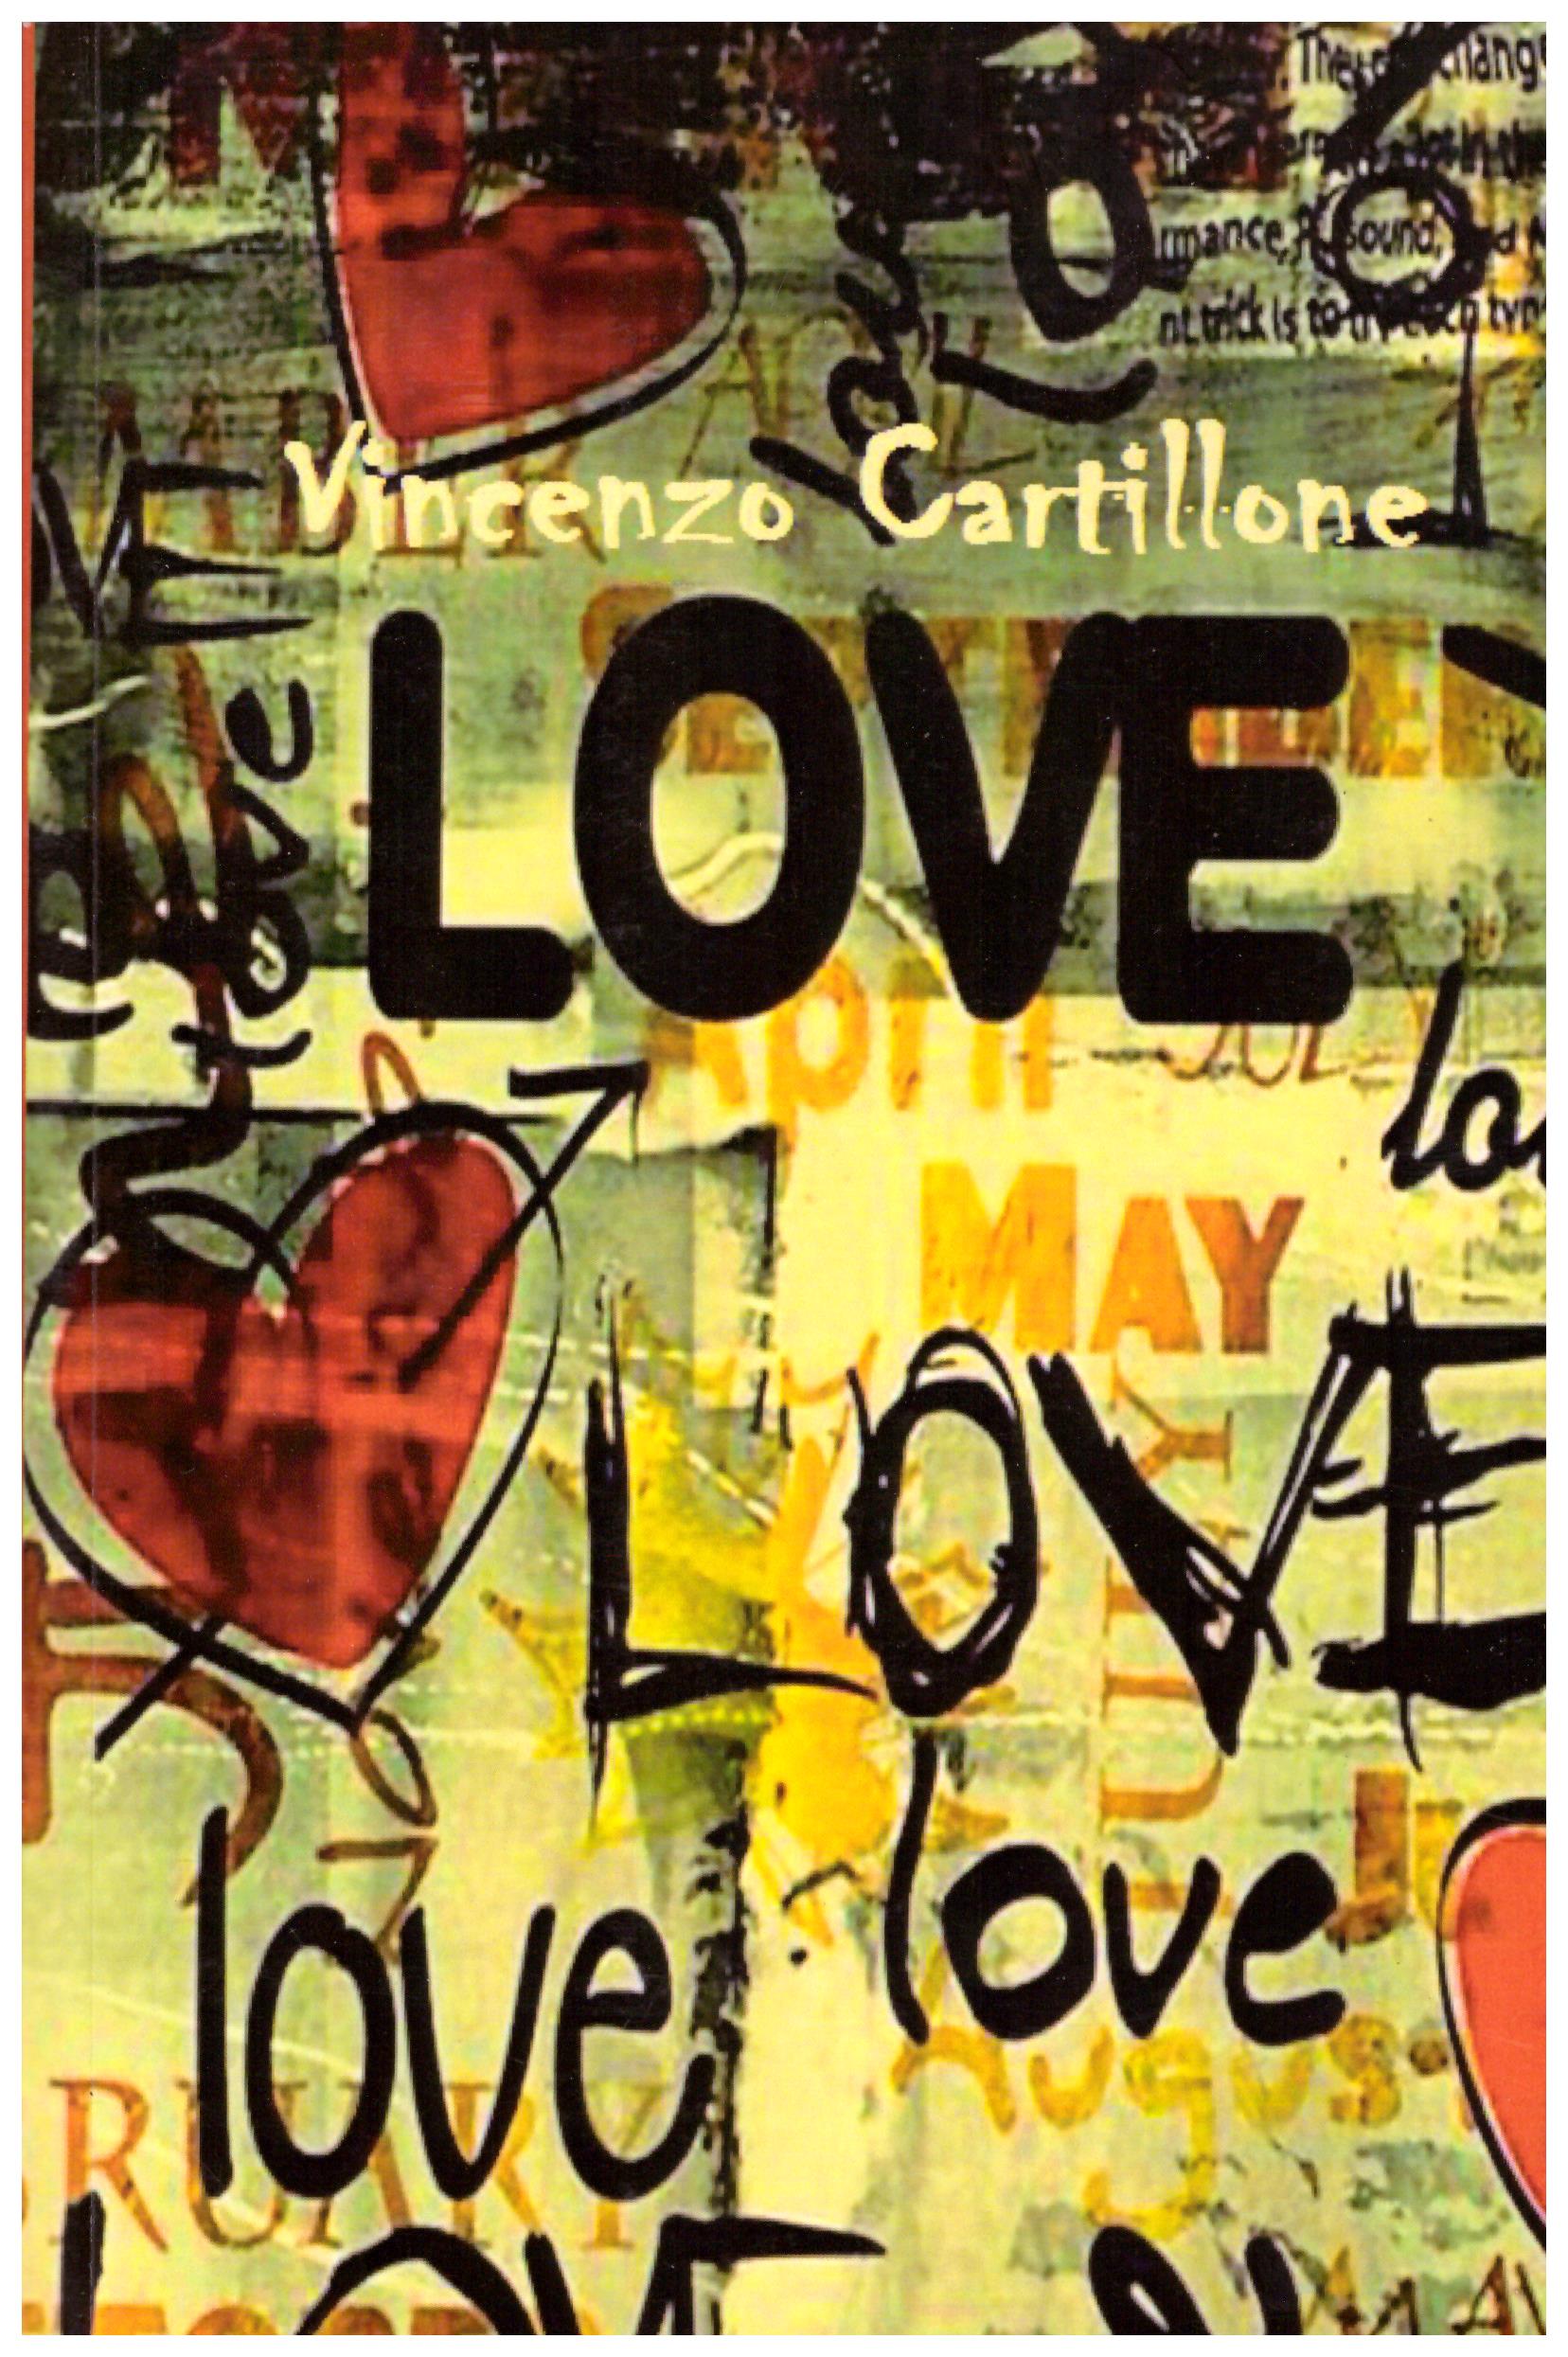 Titolo: Love     Autore: Vincenzo Cartillone    Editore: Fondazione Marco Mancini Onlus